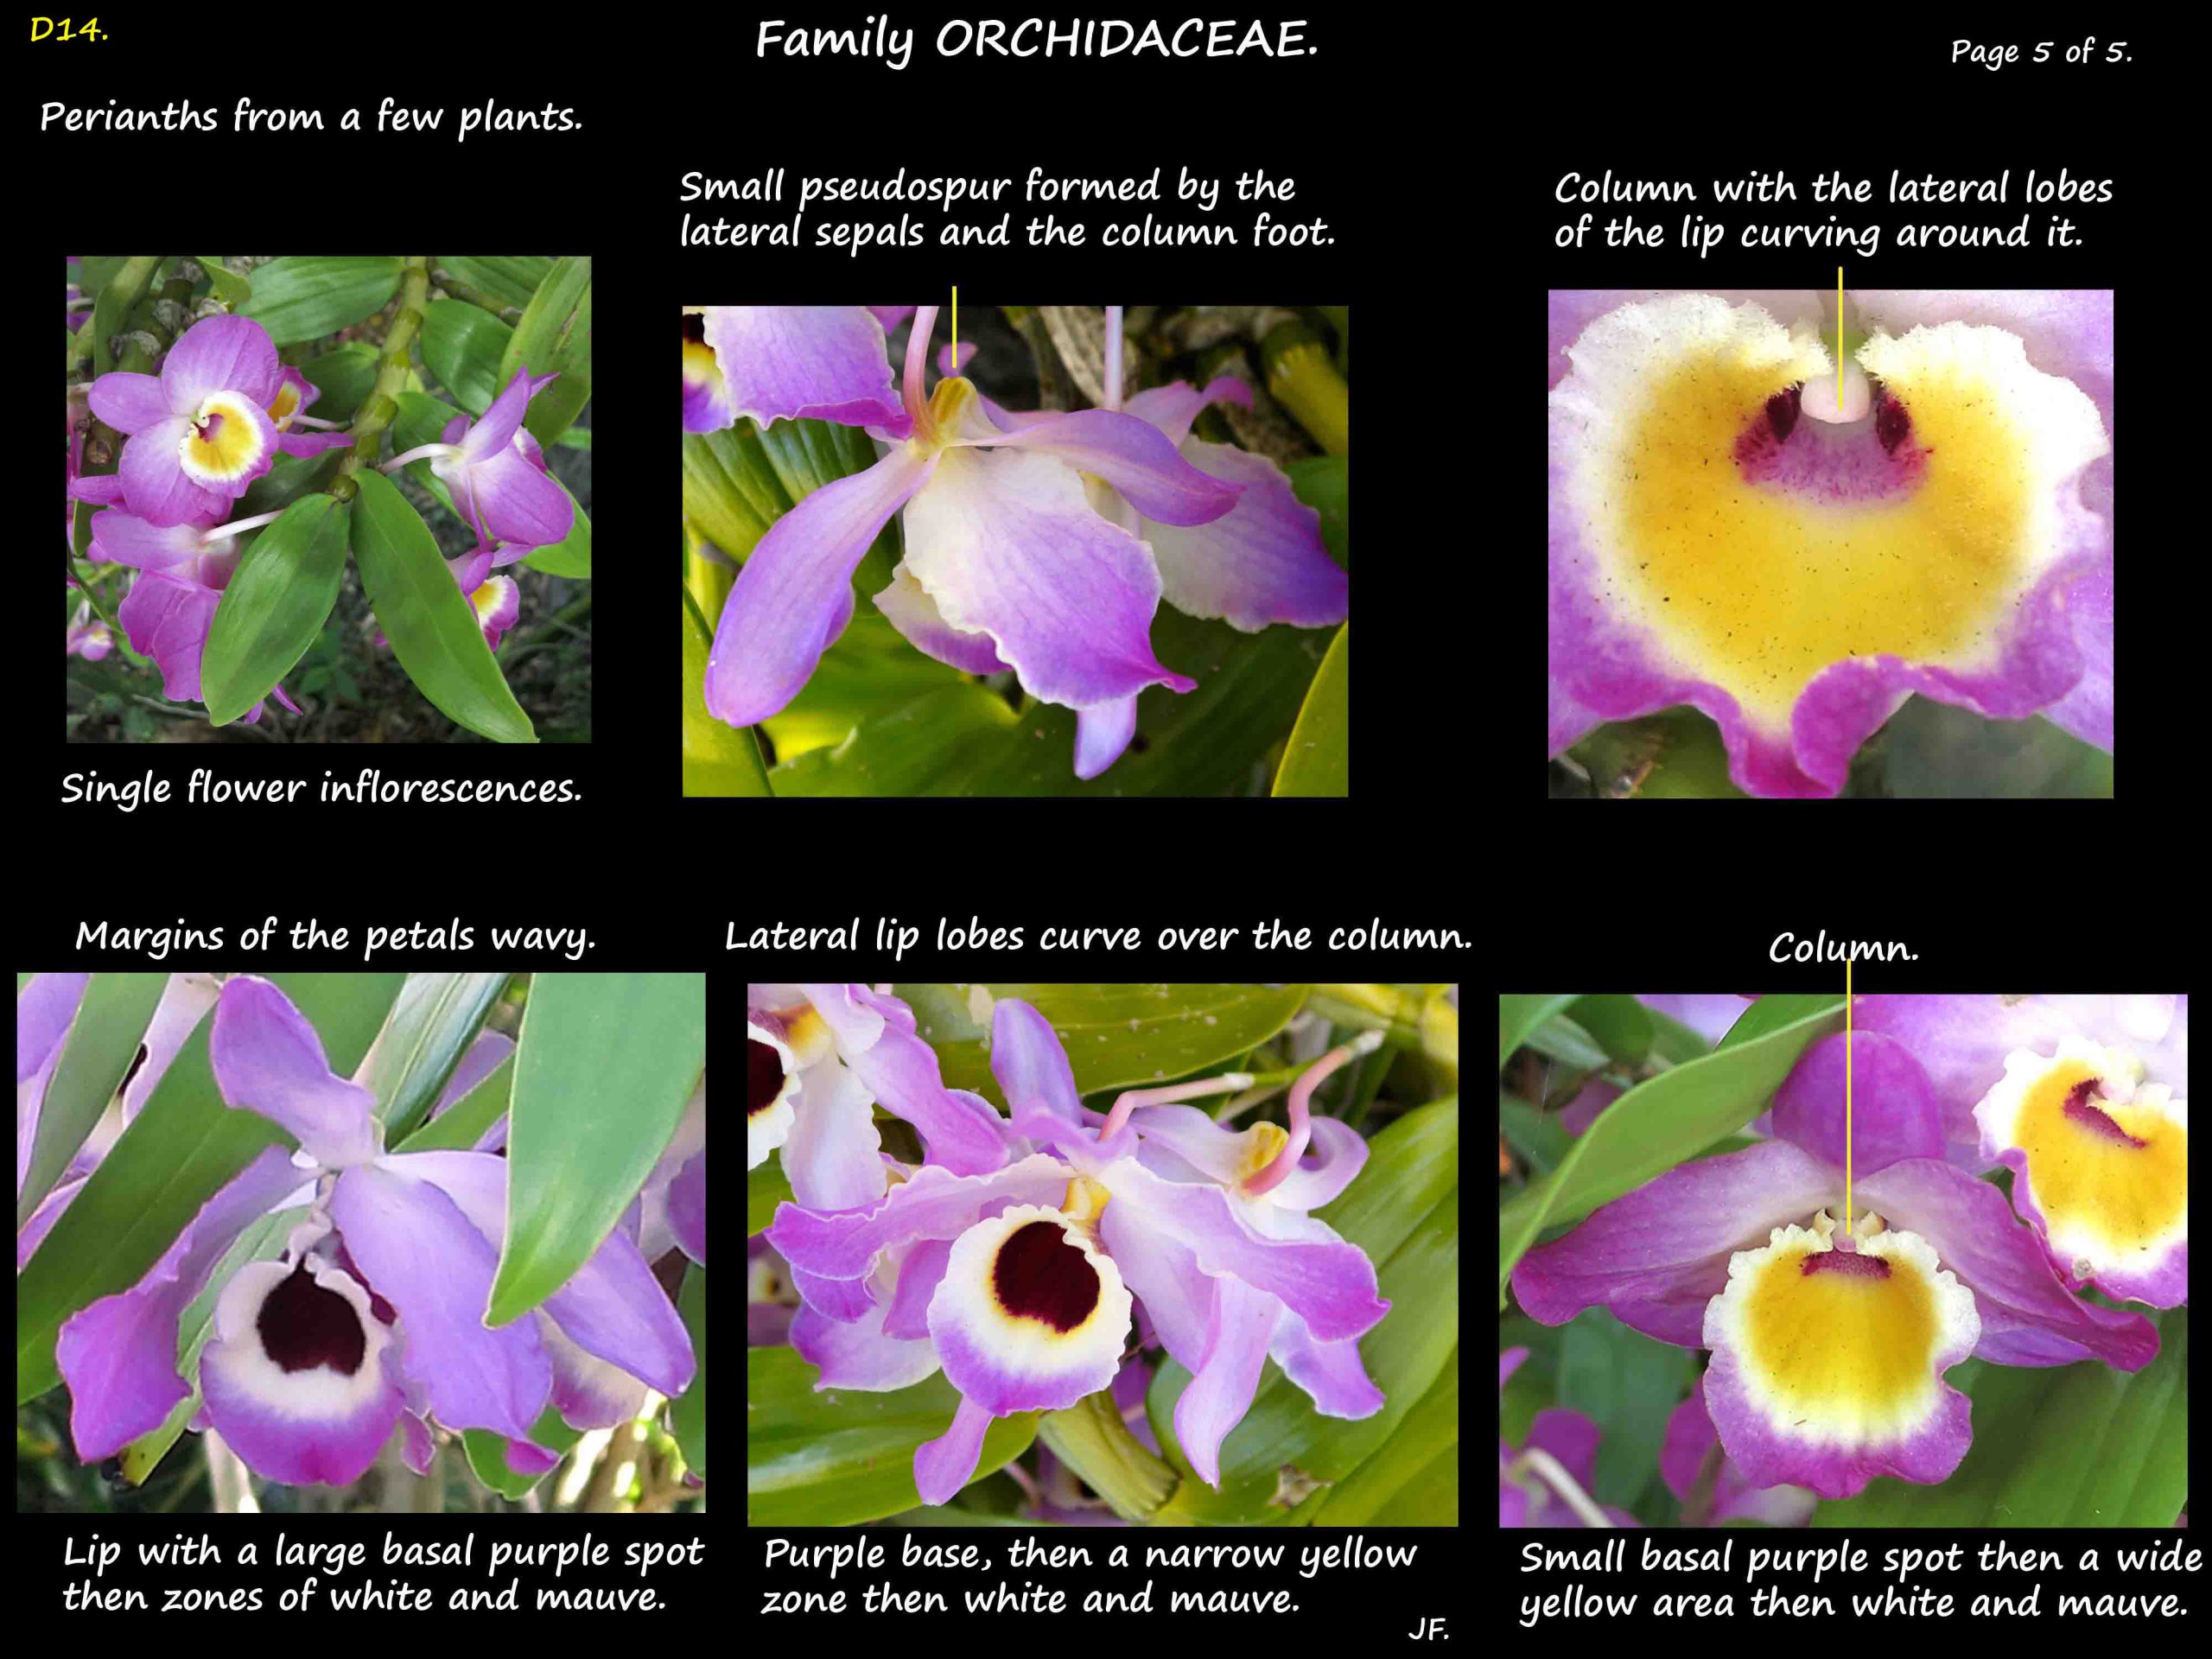 5 The perianth in Dendrobium nobile